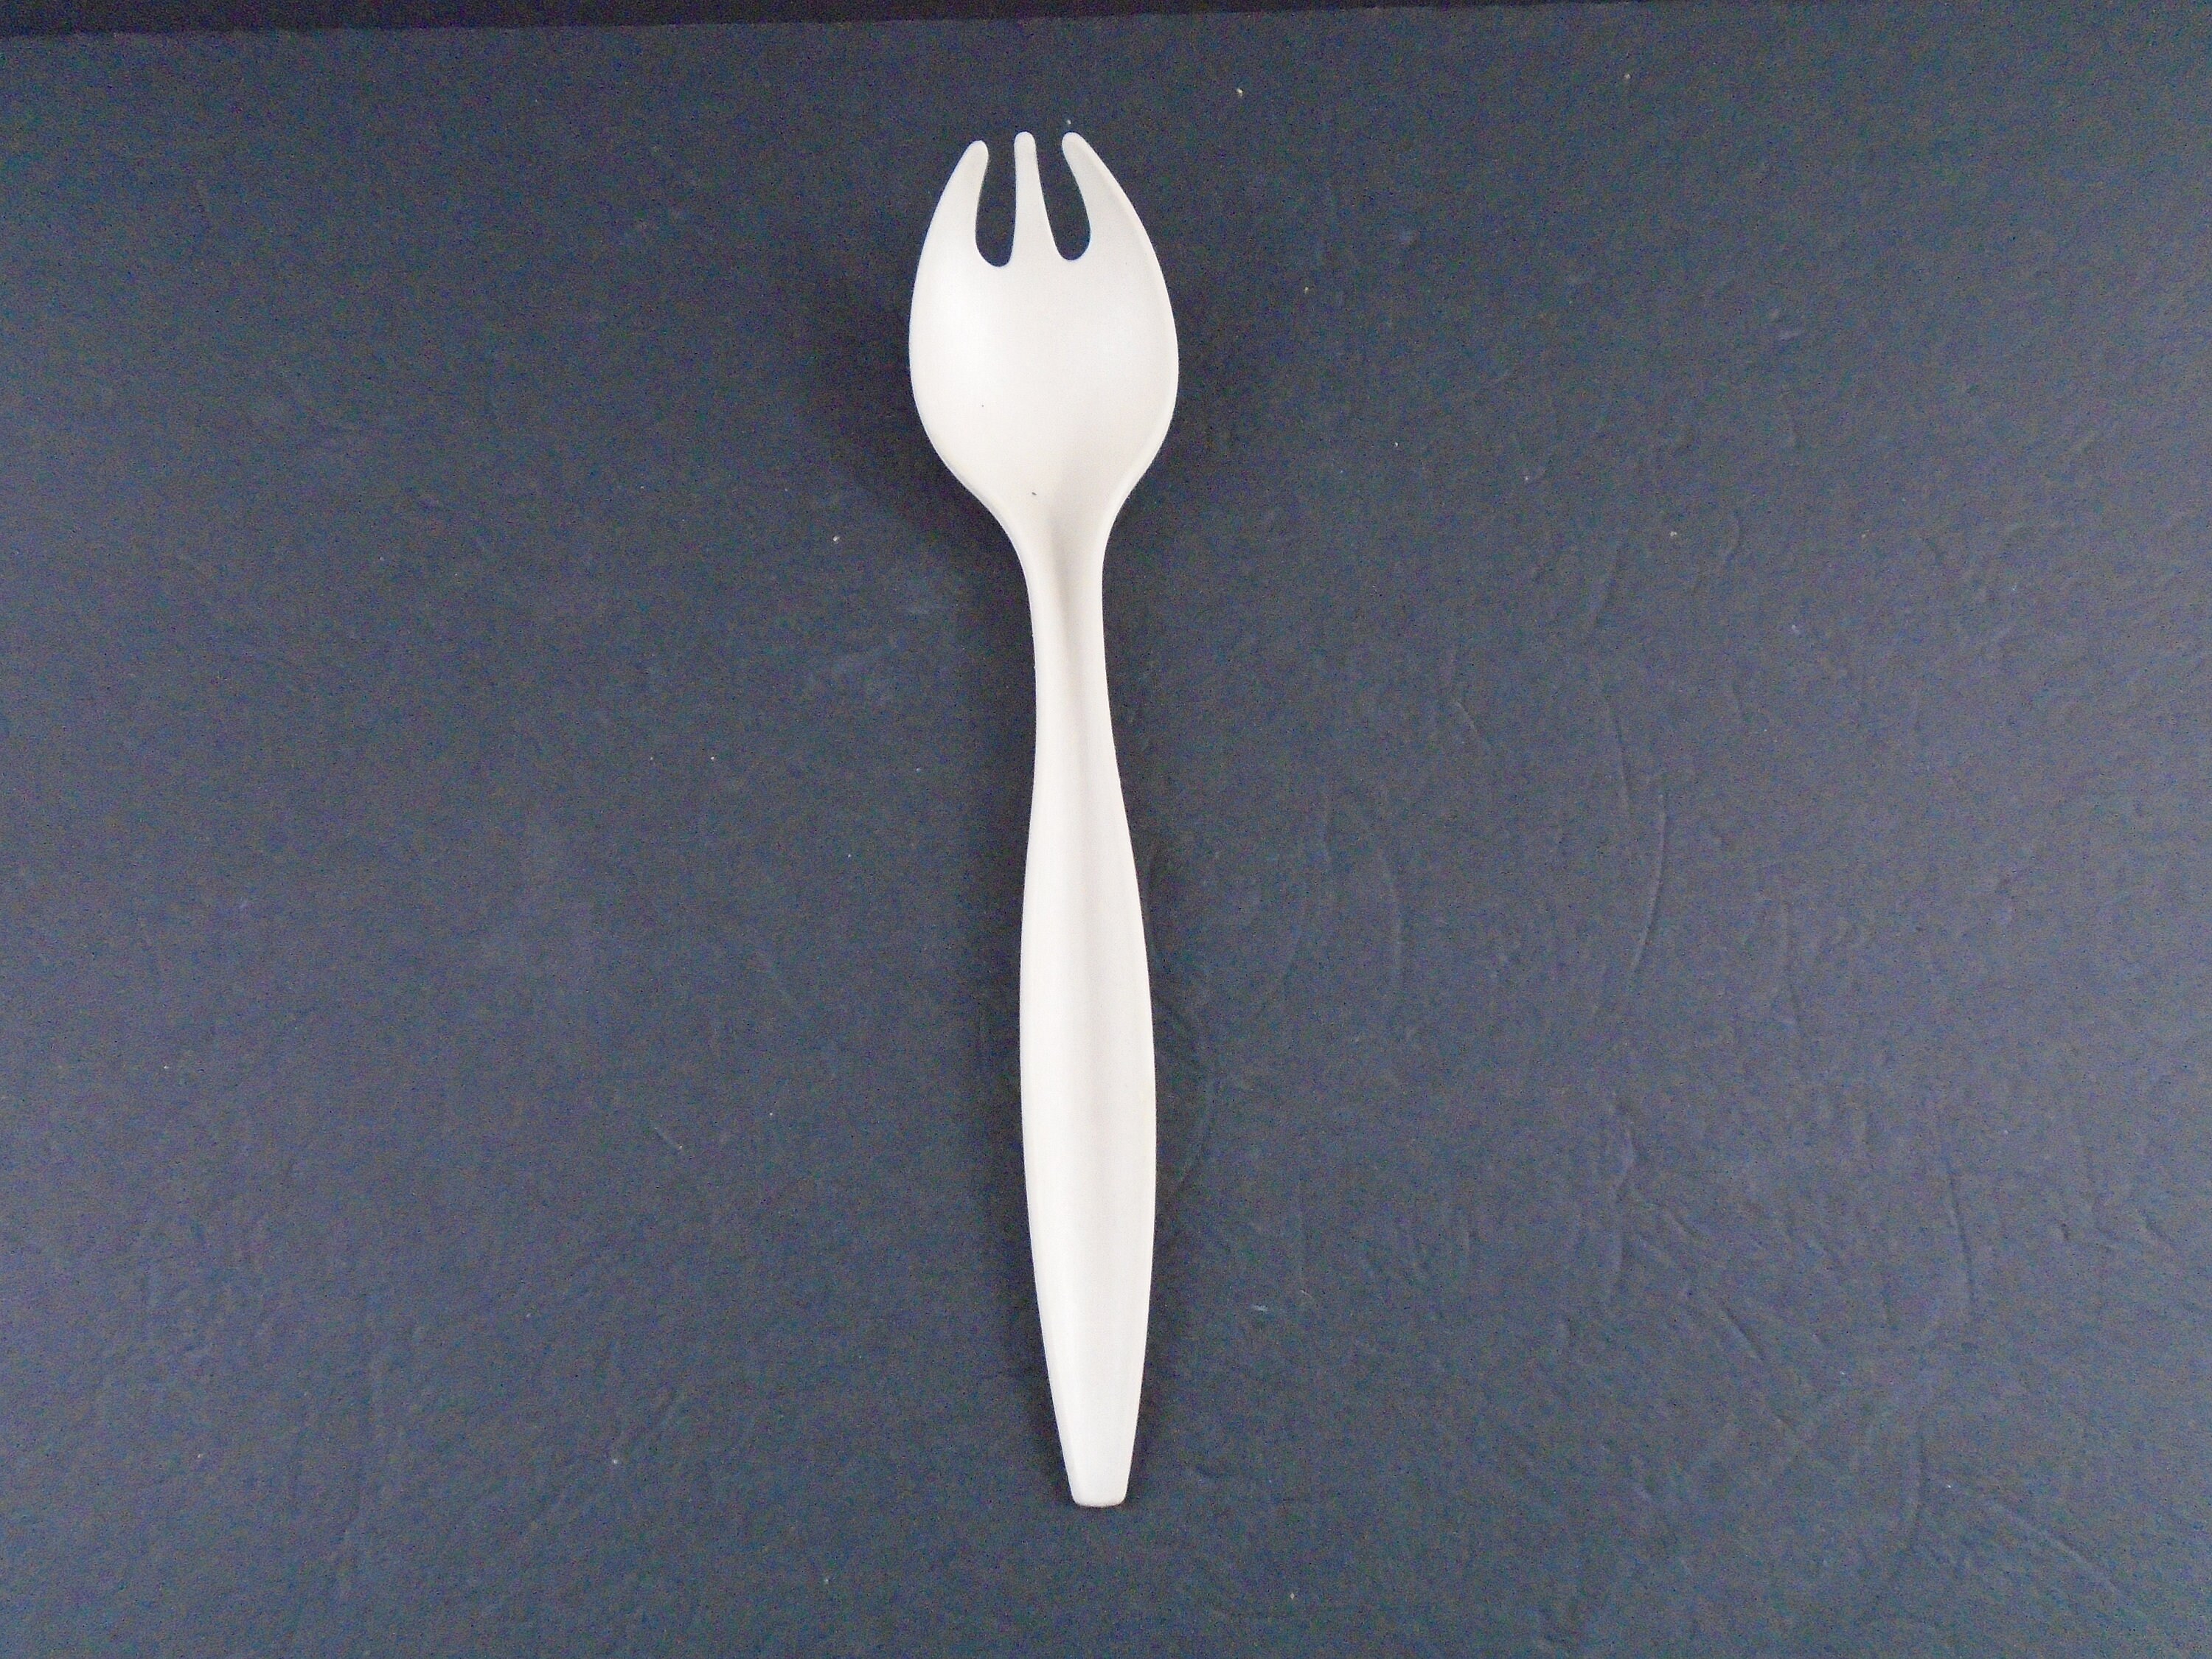 Tupperware comprimible de silicona (cuchara-tenedor)